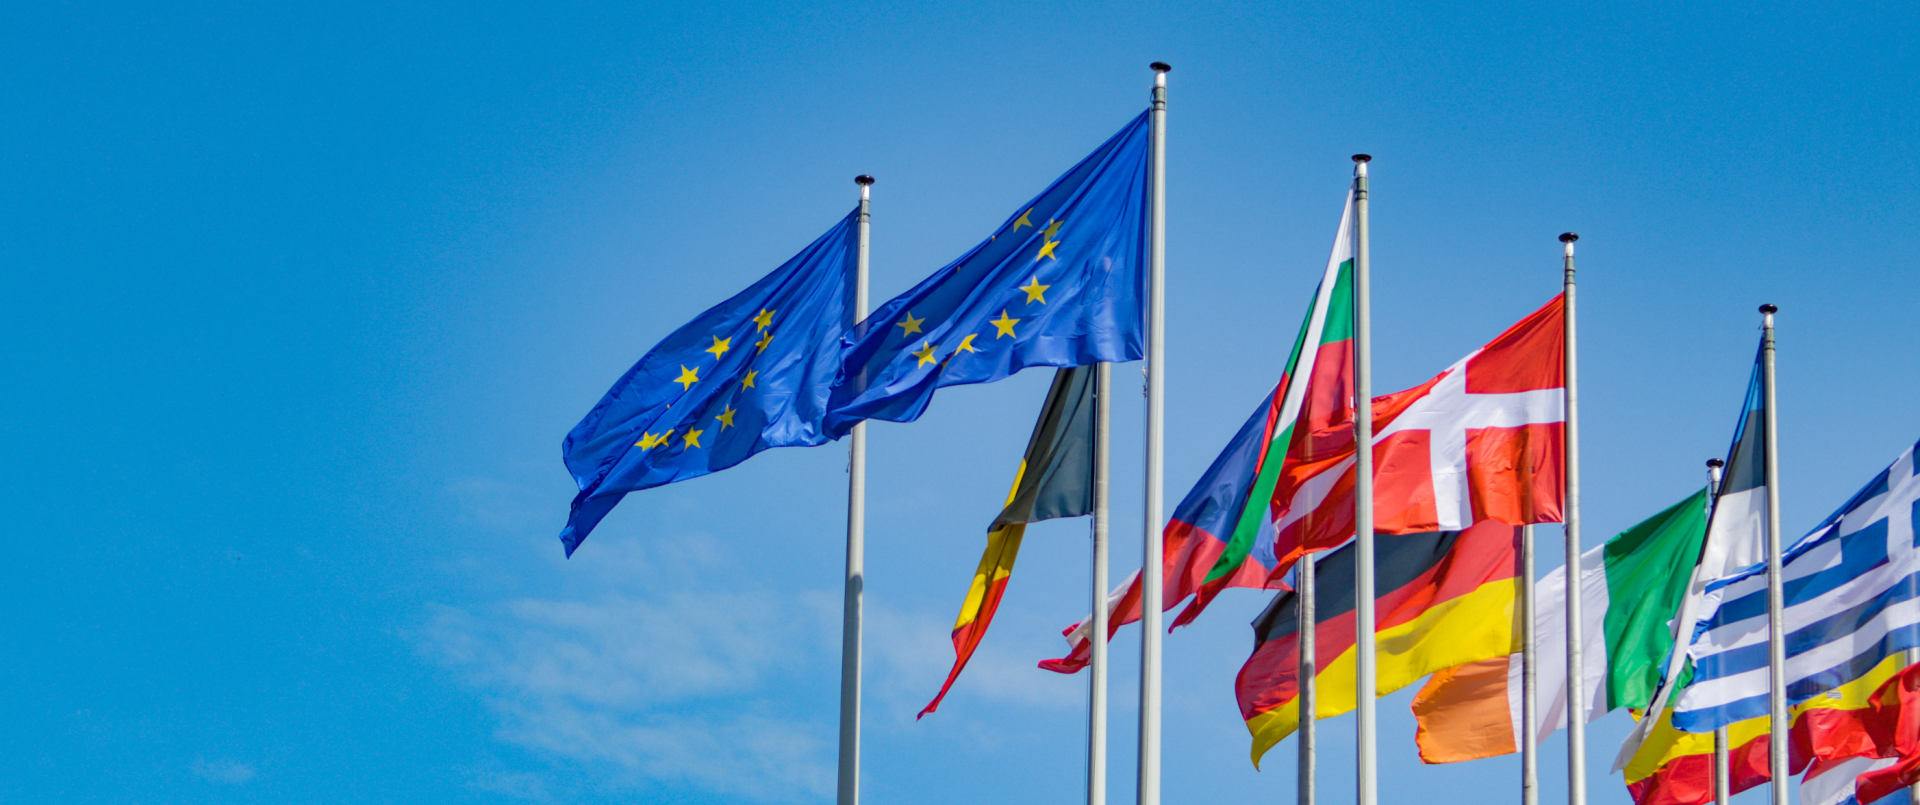 Bild mit Flaggen der EU